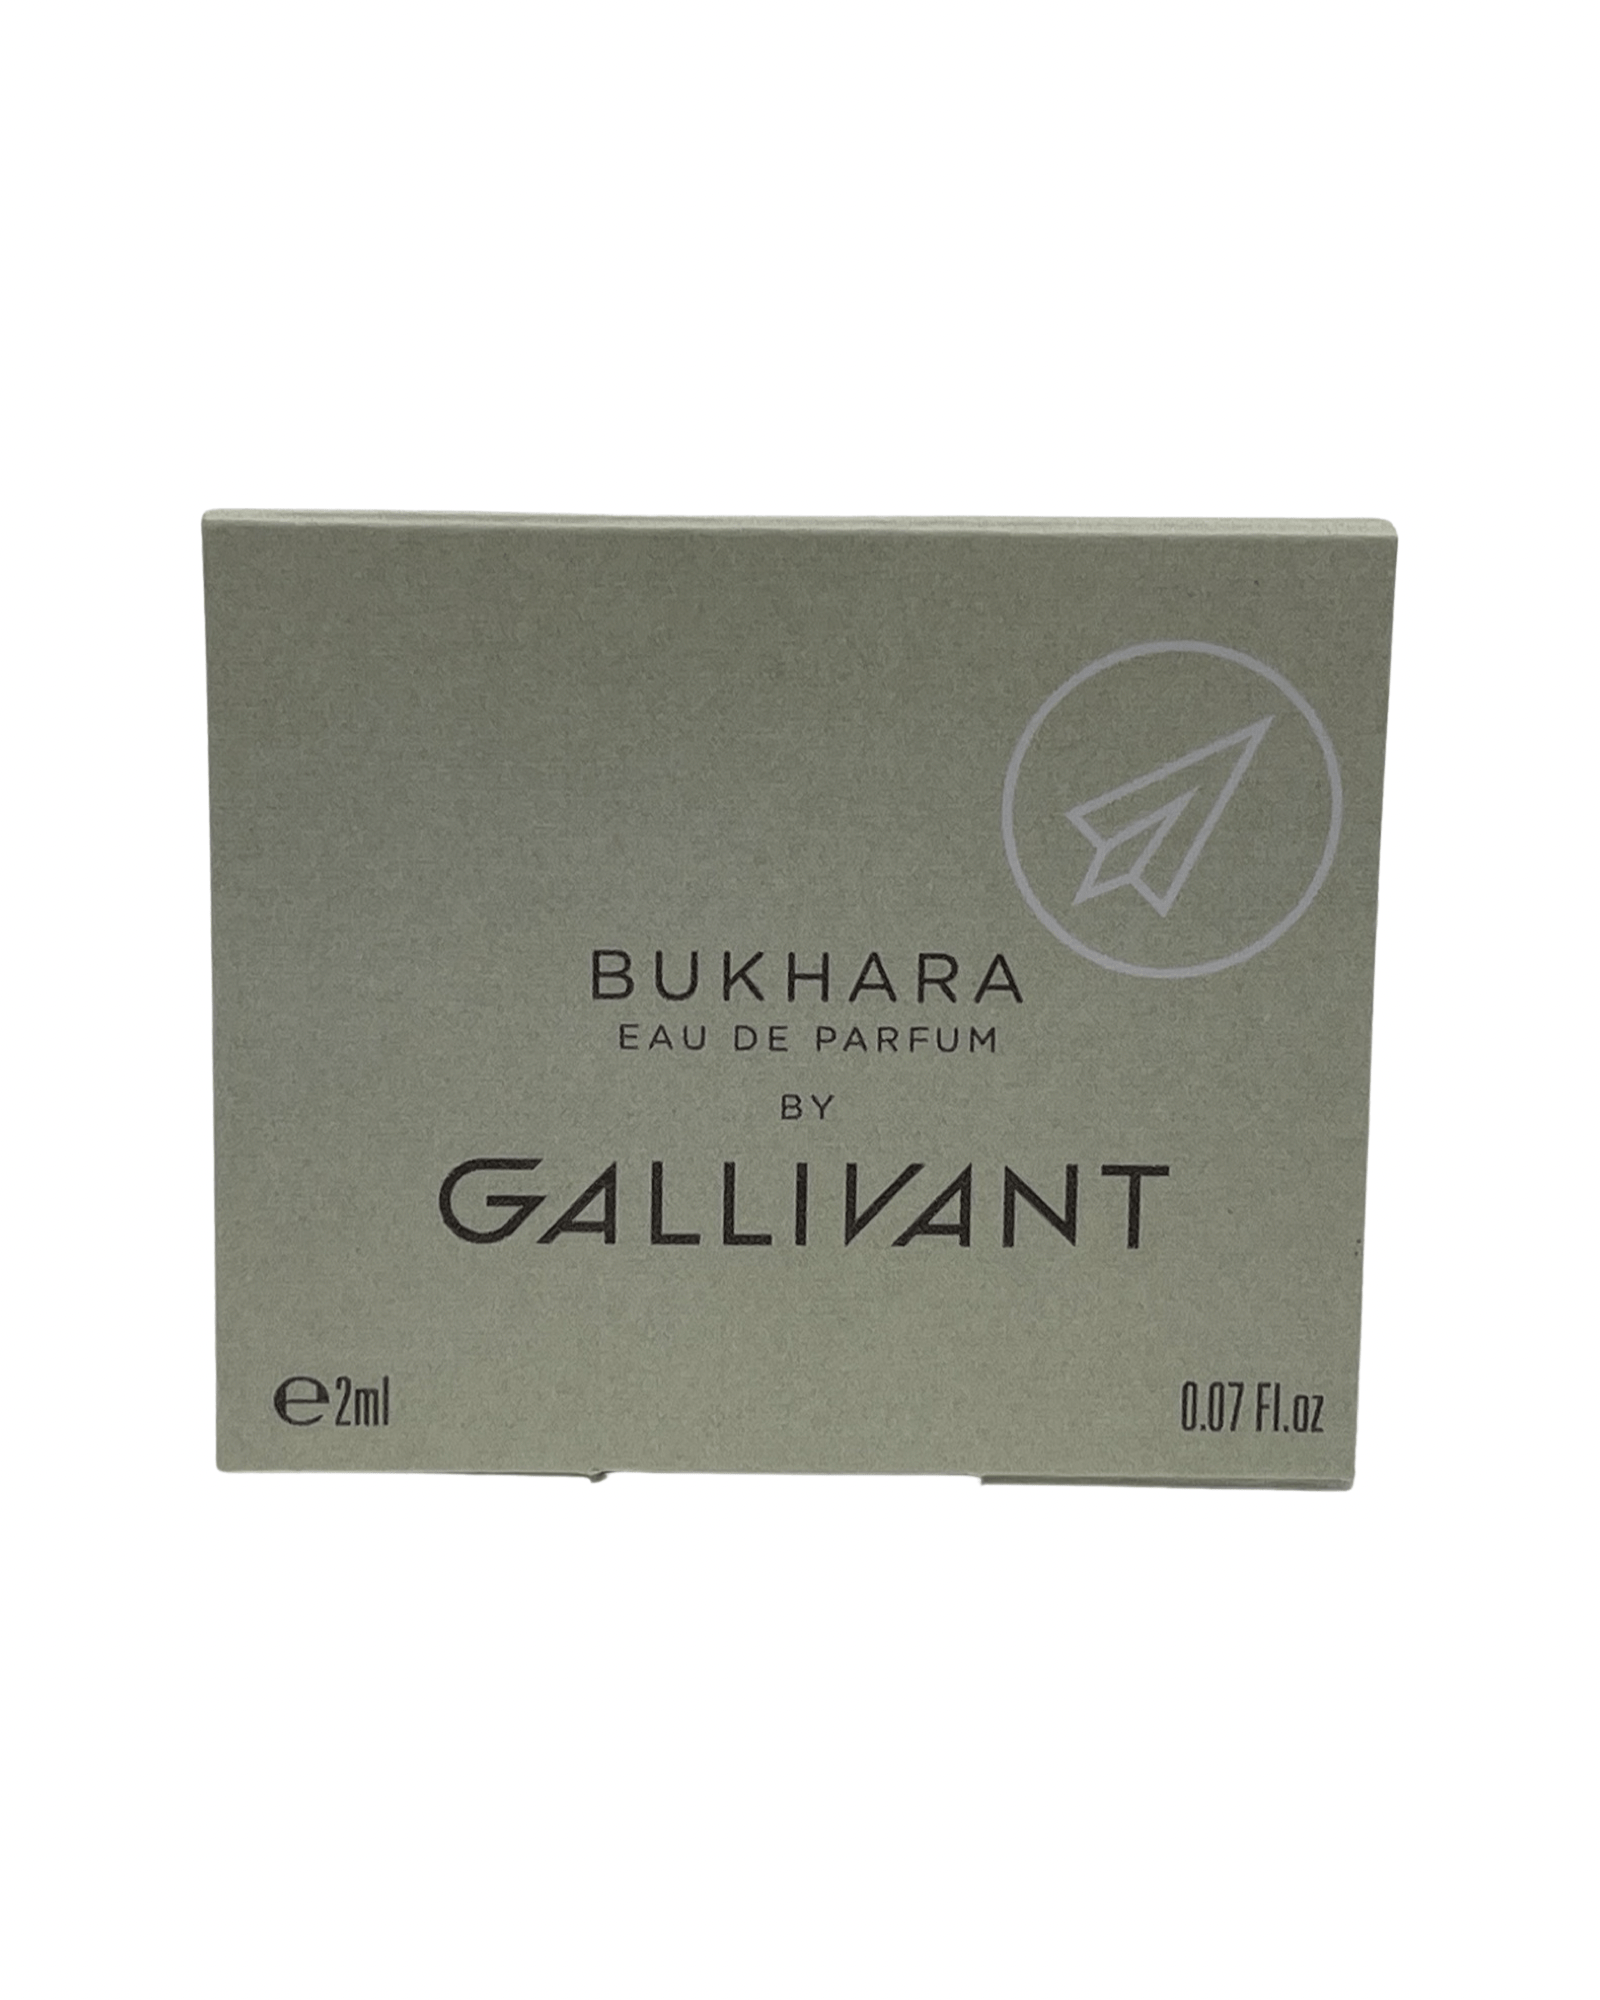 Gallivant - Bukhara - 2ml.